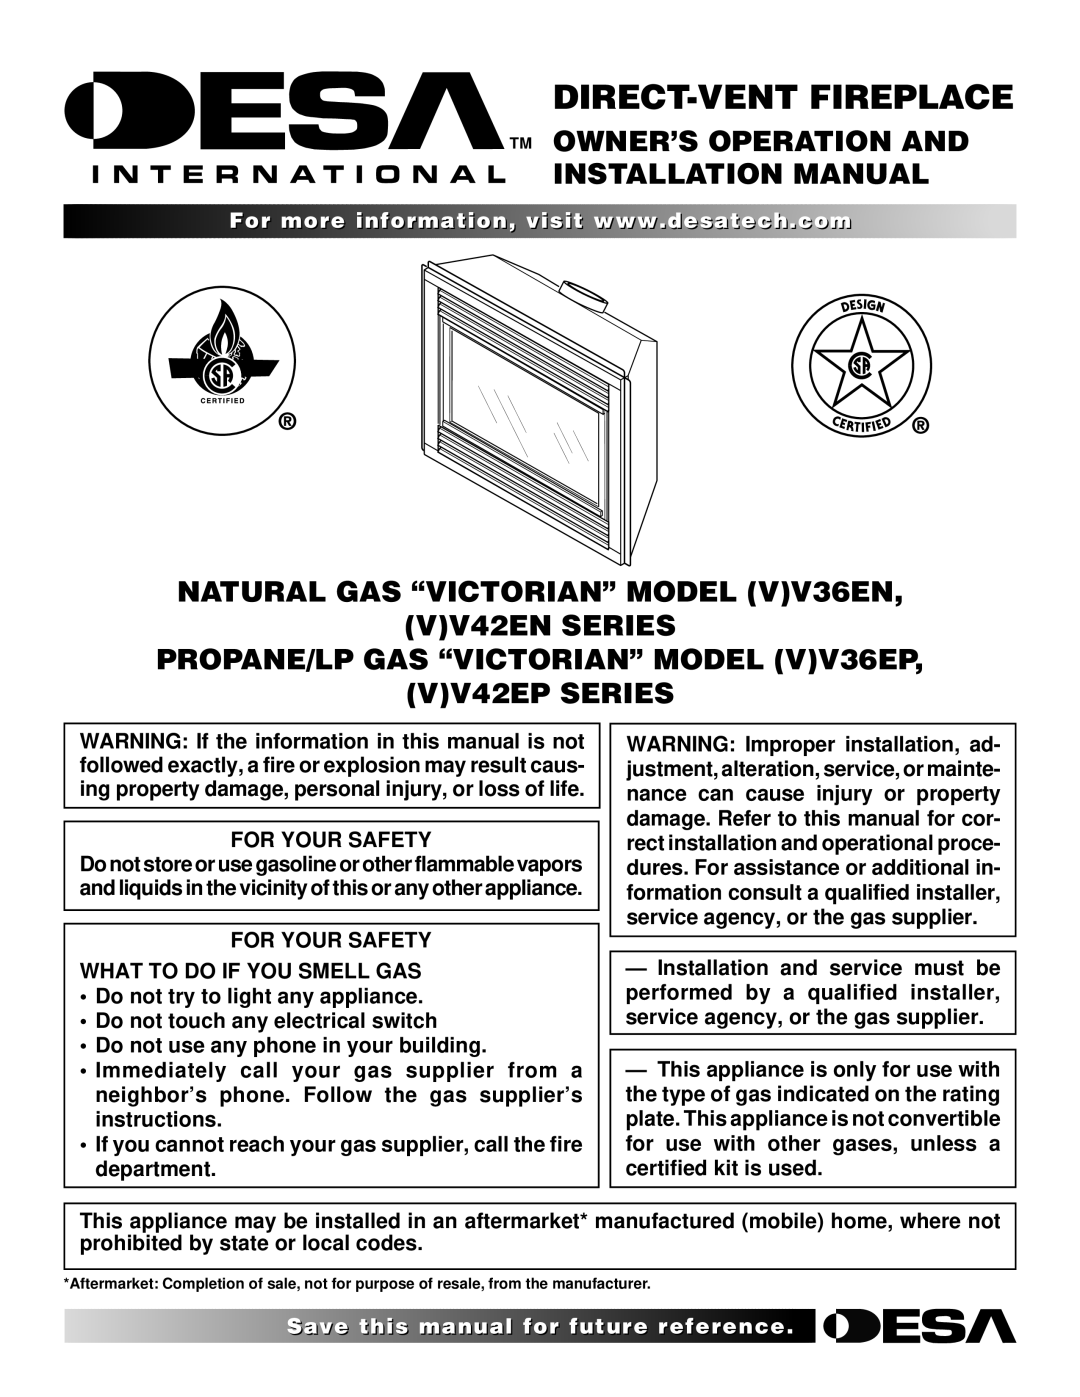 Desa (V)V36EN installation manual TM OWNER’S Operation Installation Manual, For Your Safety 